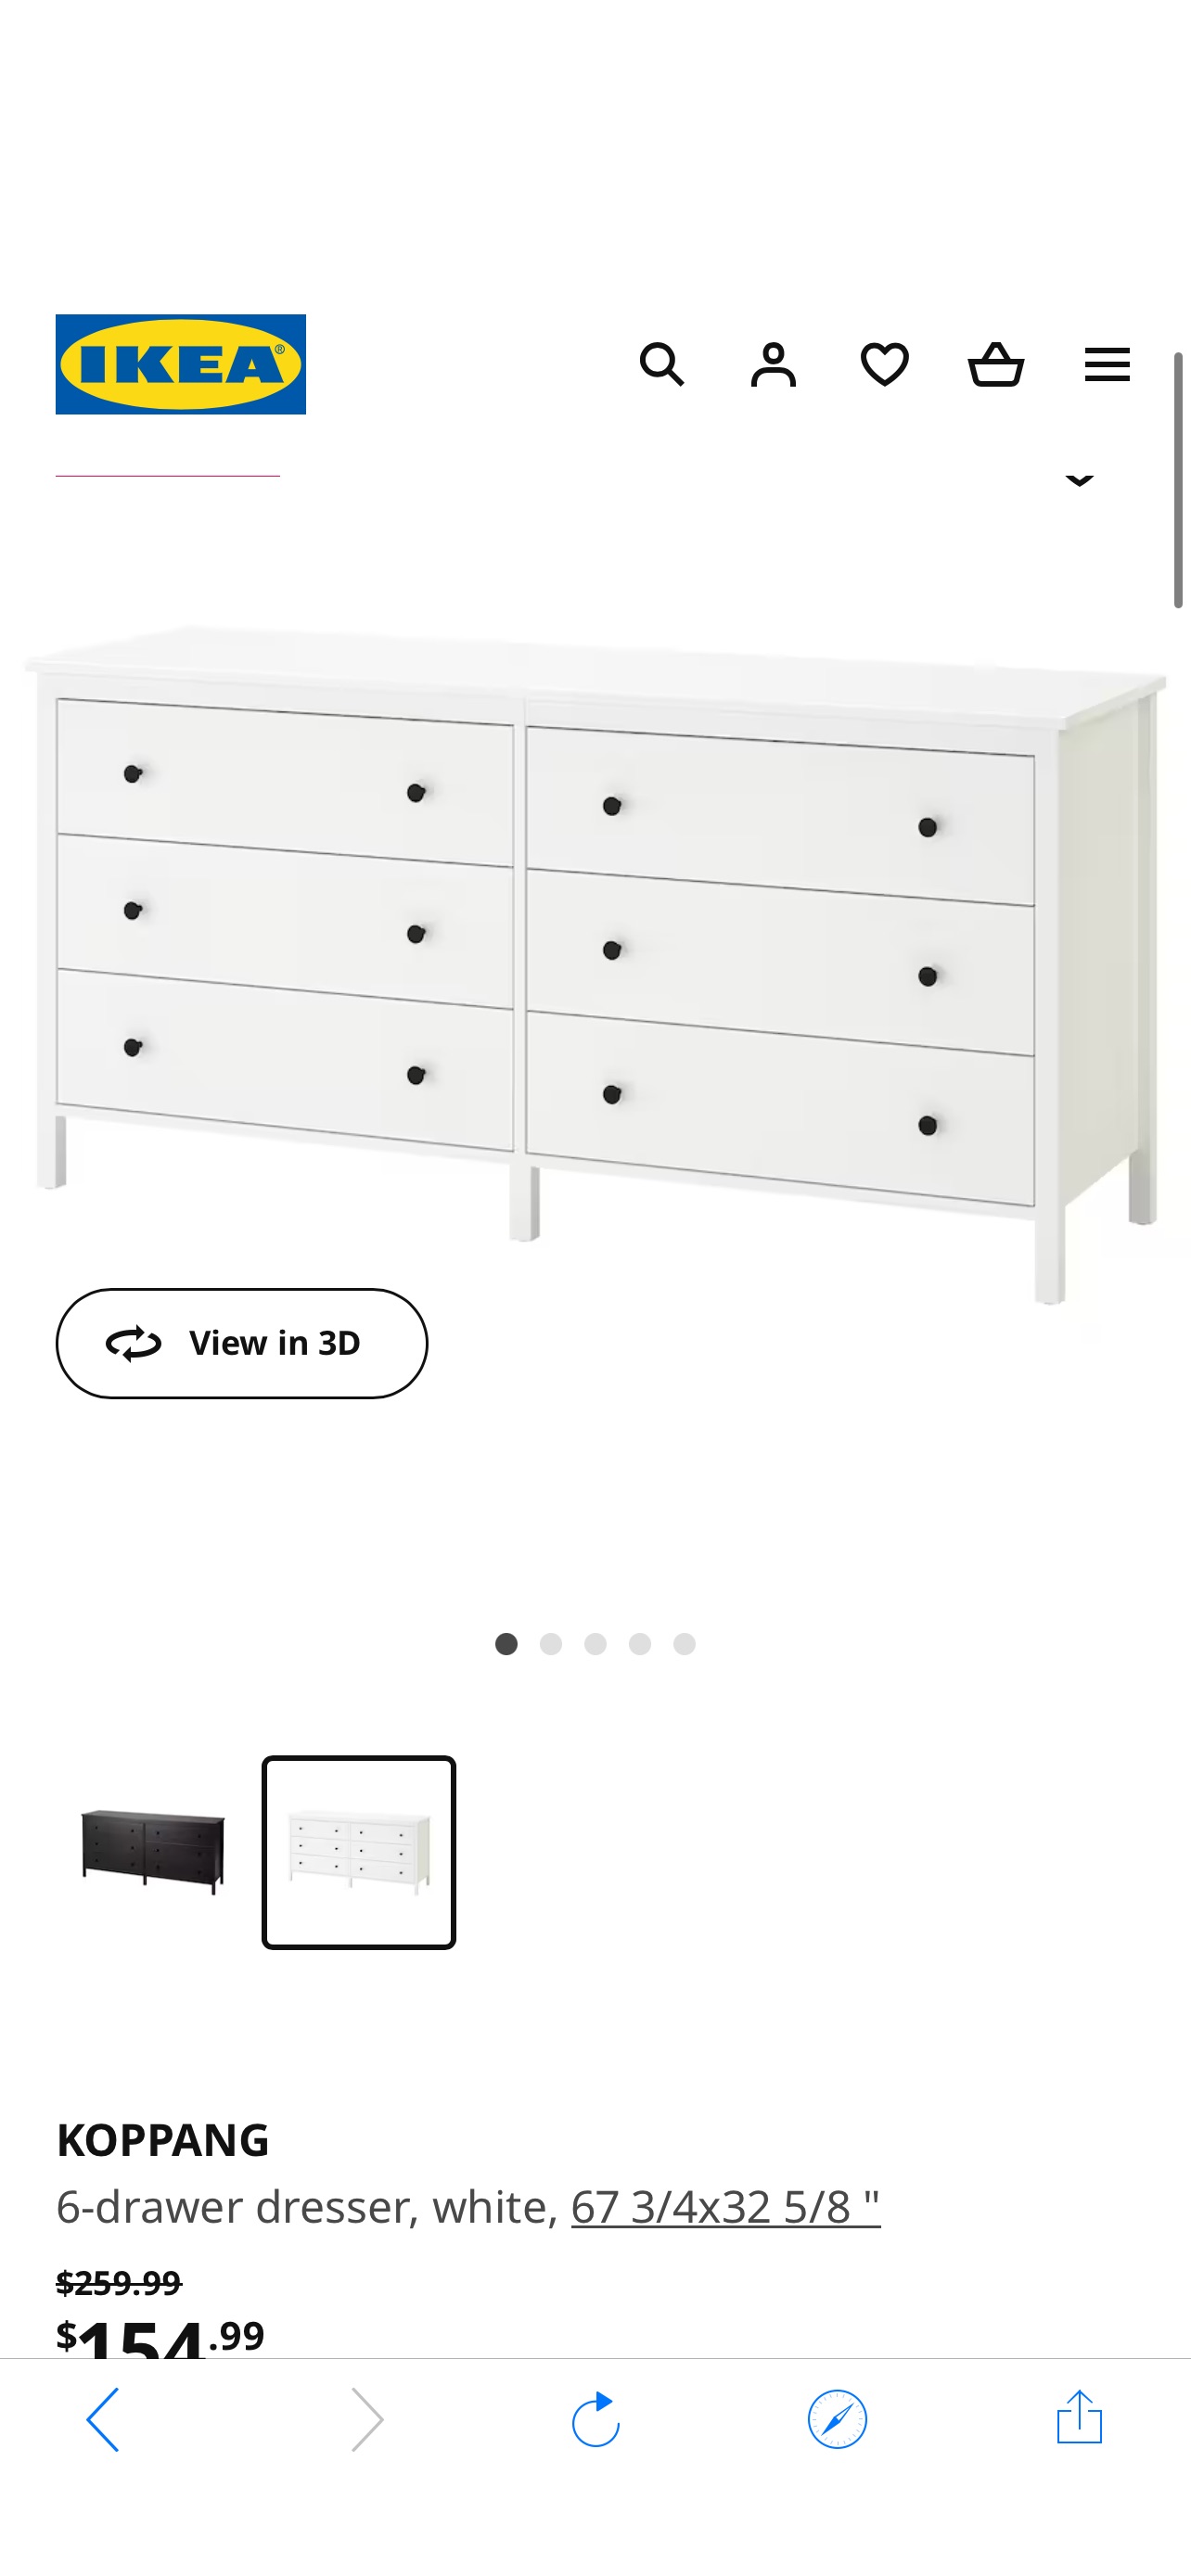 KOPPANG 6-drawer dresser, white, 673/4x325/8" - IKEA